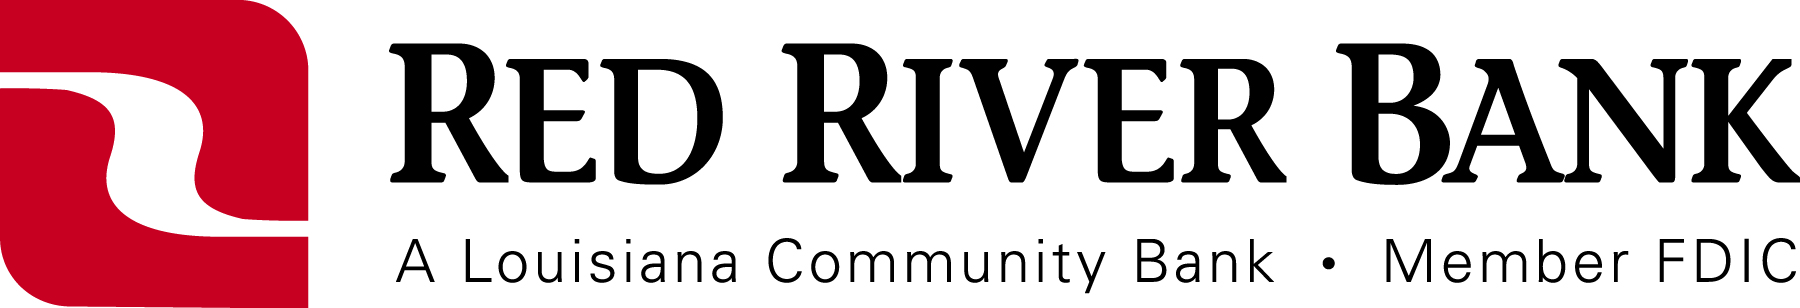 Red River Bank_Horizontal Logo.jpg